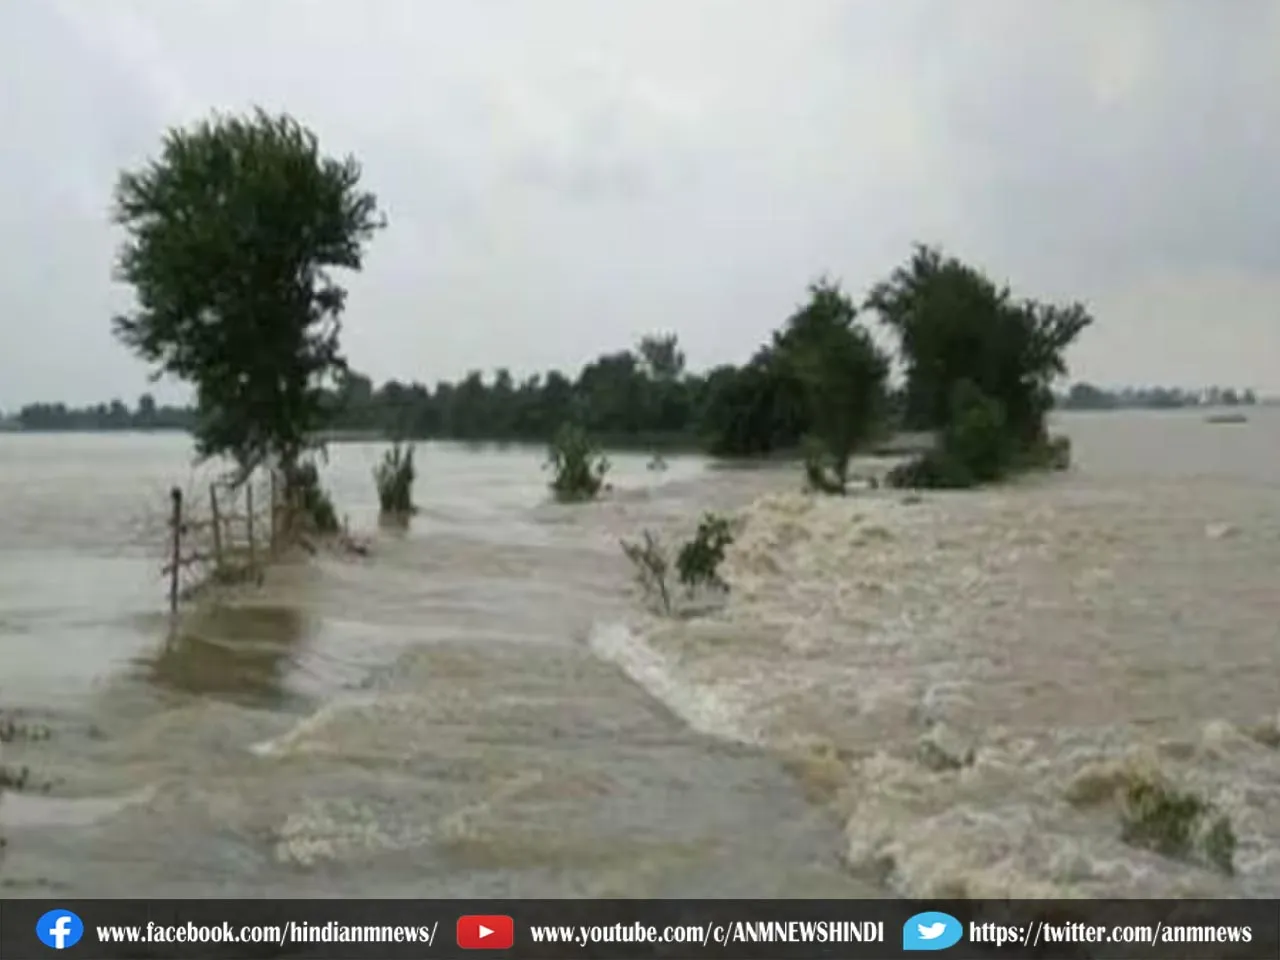 Flood alert : सात जिलों के लिए बाढ़ अलर्ट जारी